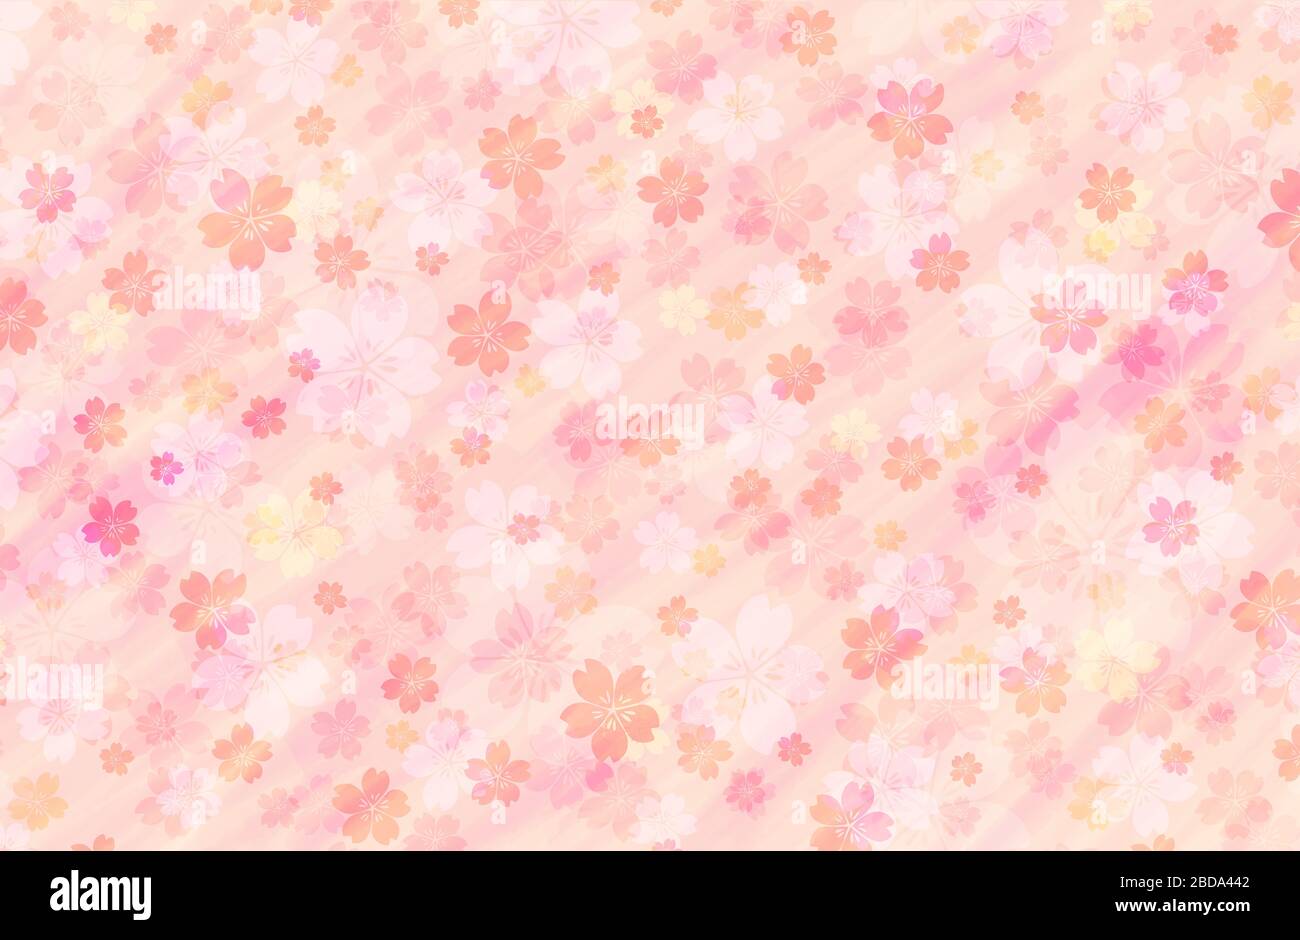 Motif à carreaux de peinture à l'eau avec fleurs de cerisier / modèle de carte de vœux du nouvel an / fond de printemps Banque D'Images